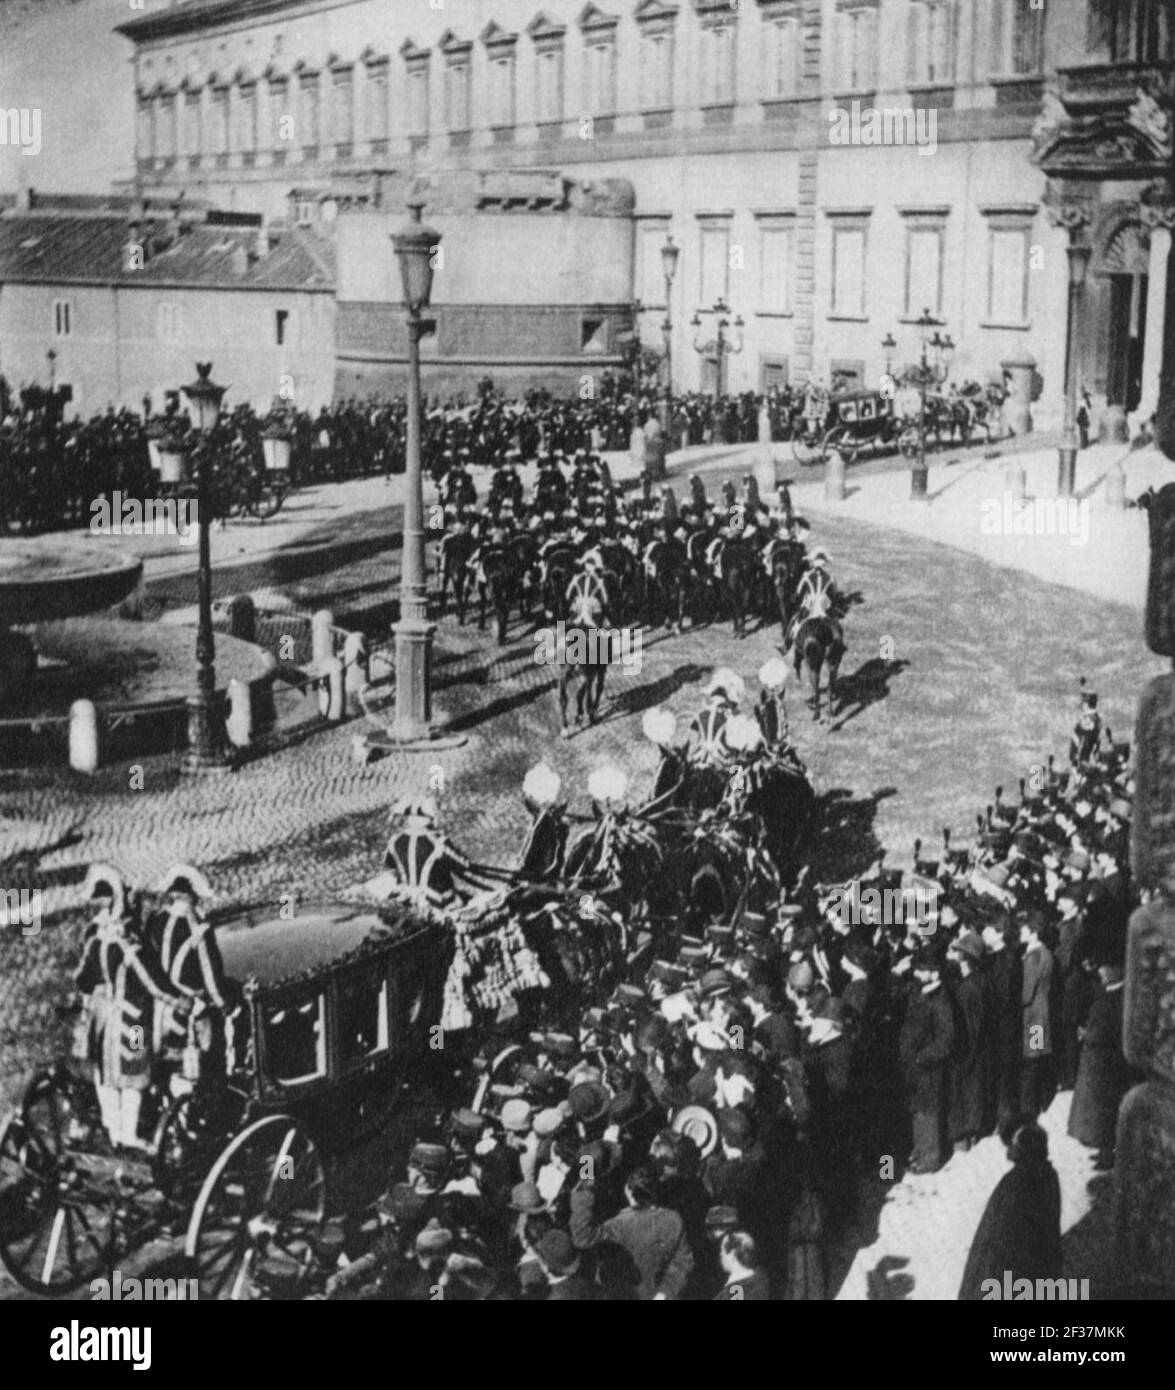 Primoli, Giuseppe - Die königliche Kolonne mit den Kutschen von Umberto I. und Keiser Guglielmo II. Stock Photo